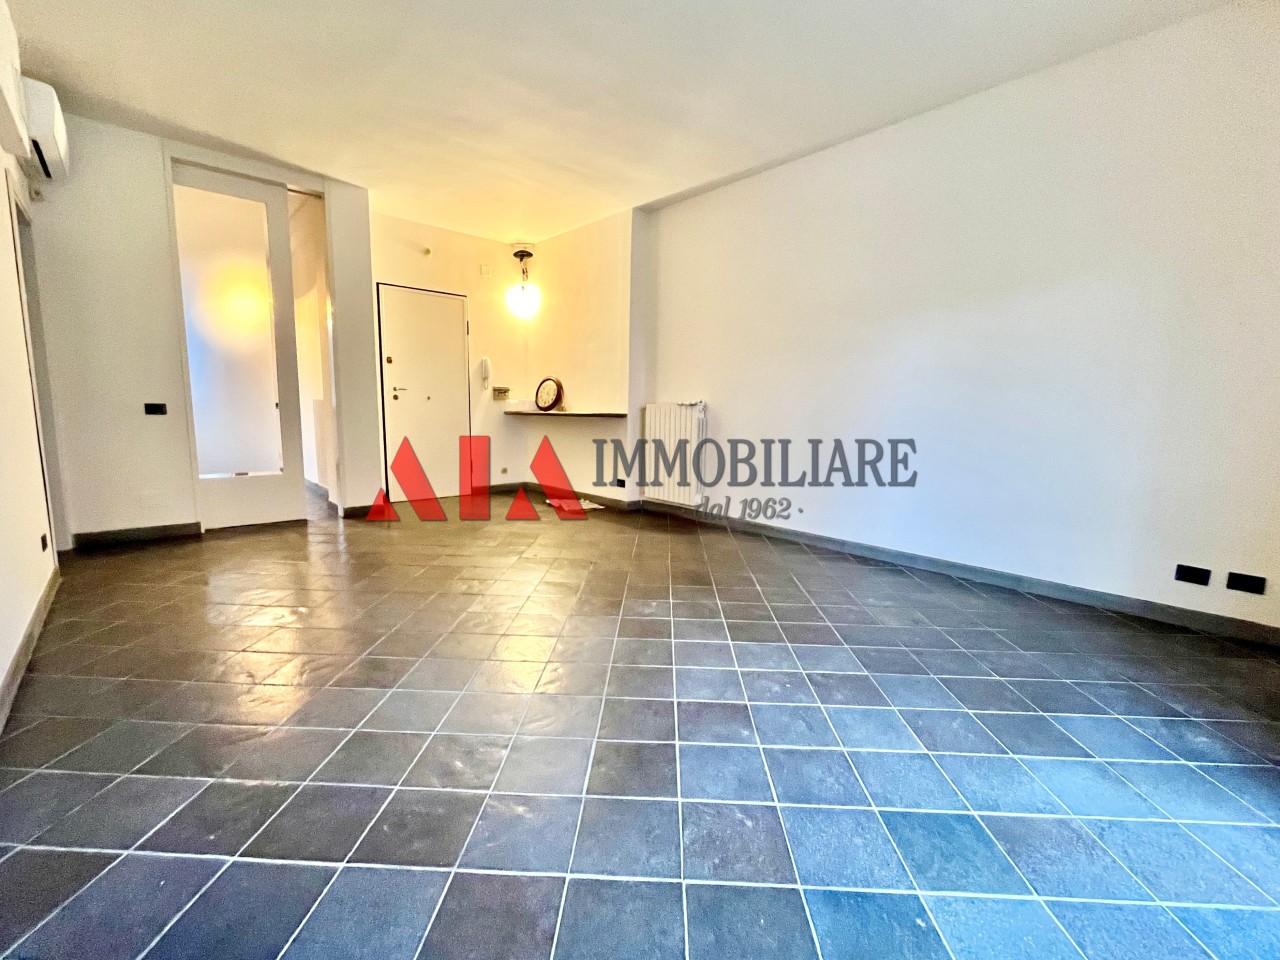 Appartamento in vendita a Pontedera, 5 locali, prezzo € 195.000 | PortaleAgenzieImmobiliari.it